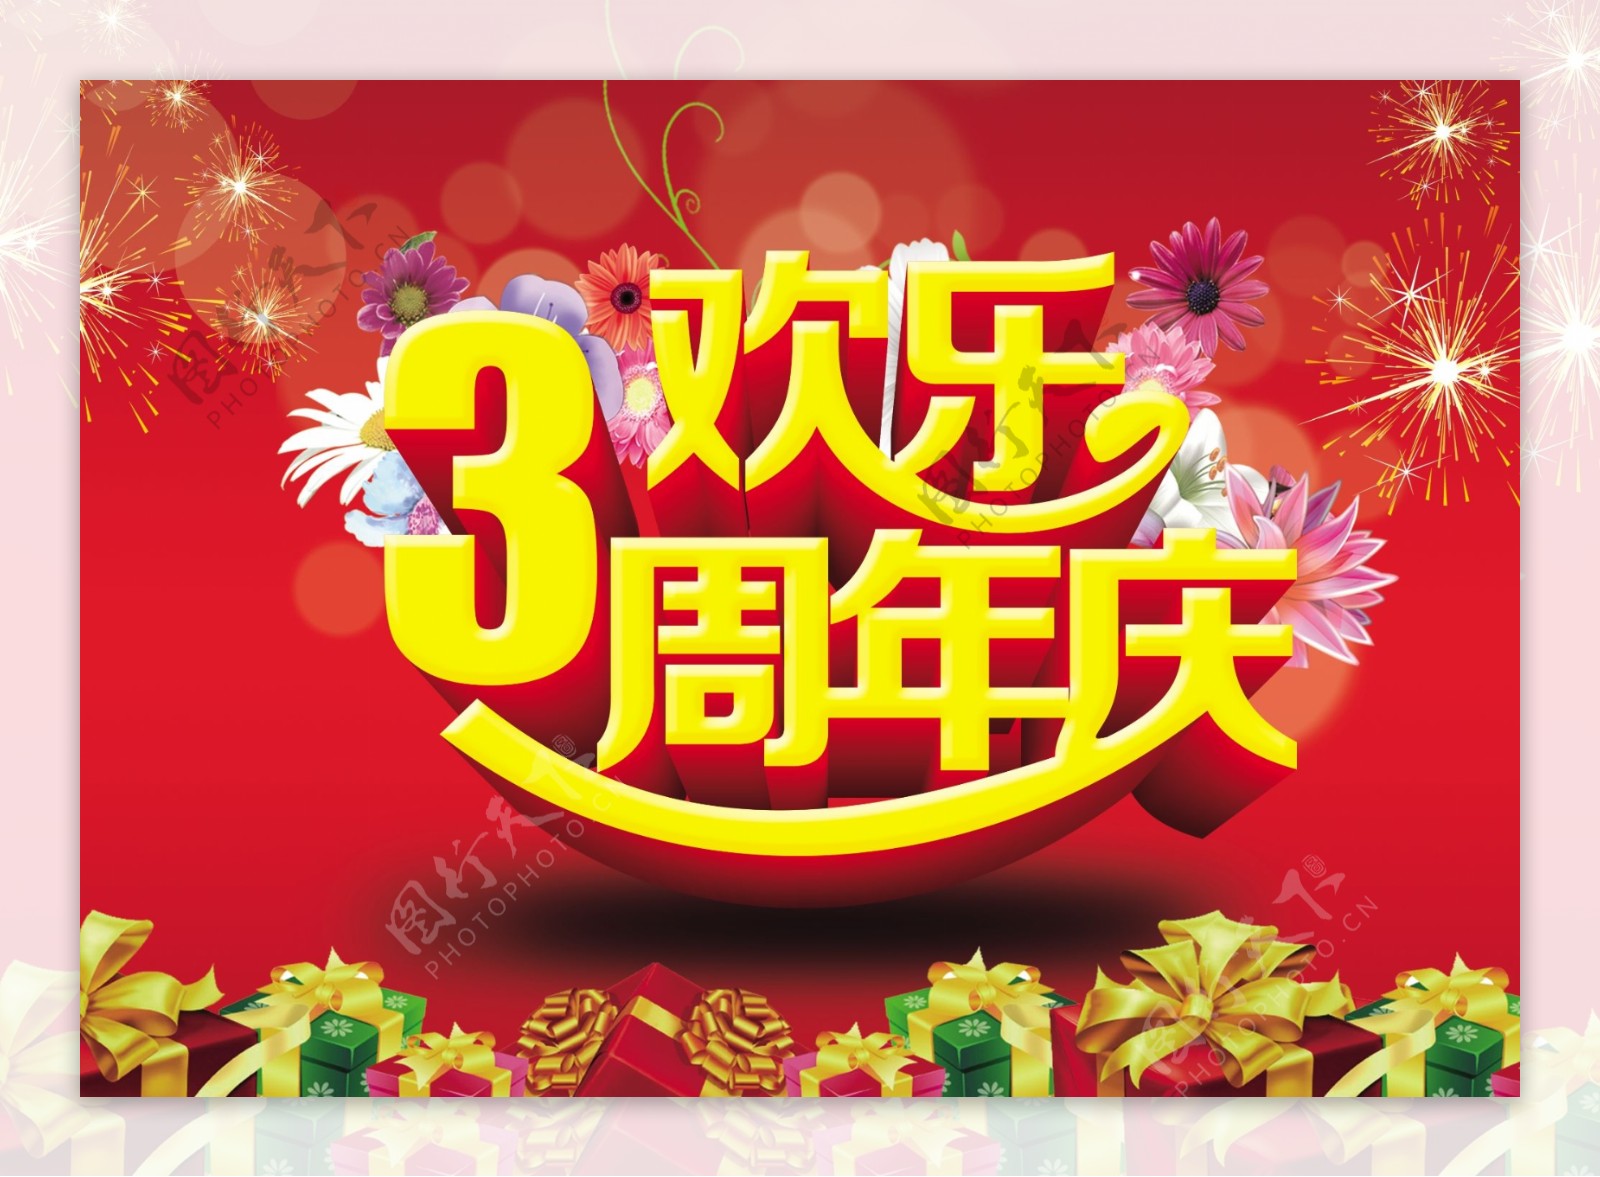 3周年店庆海报设计PSD素材